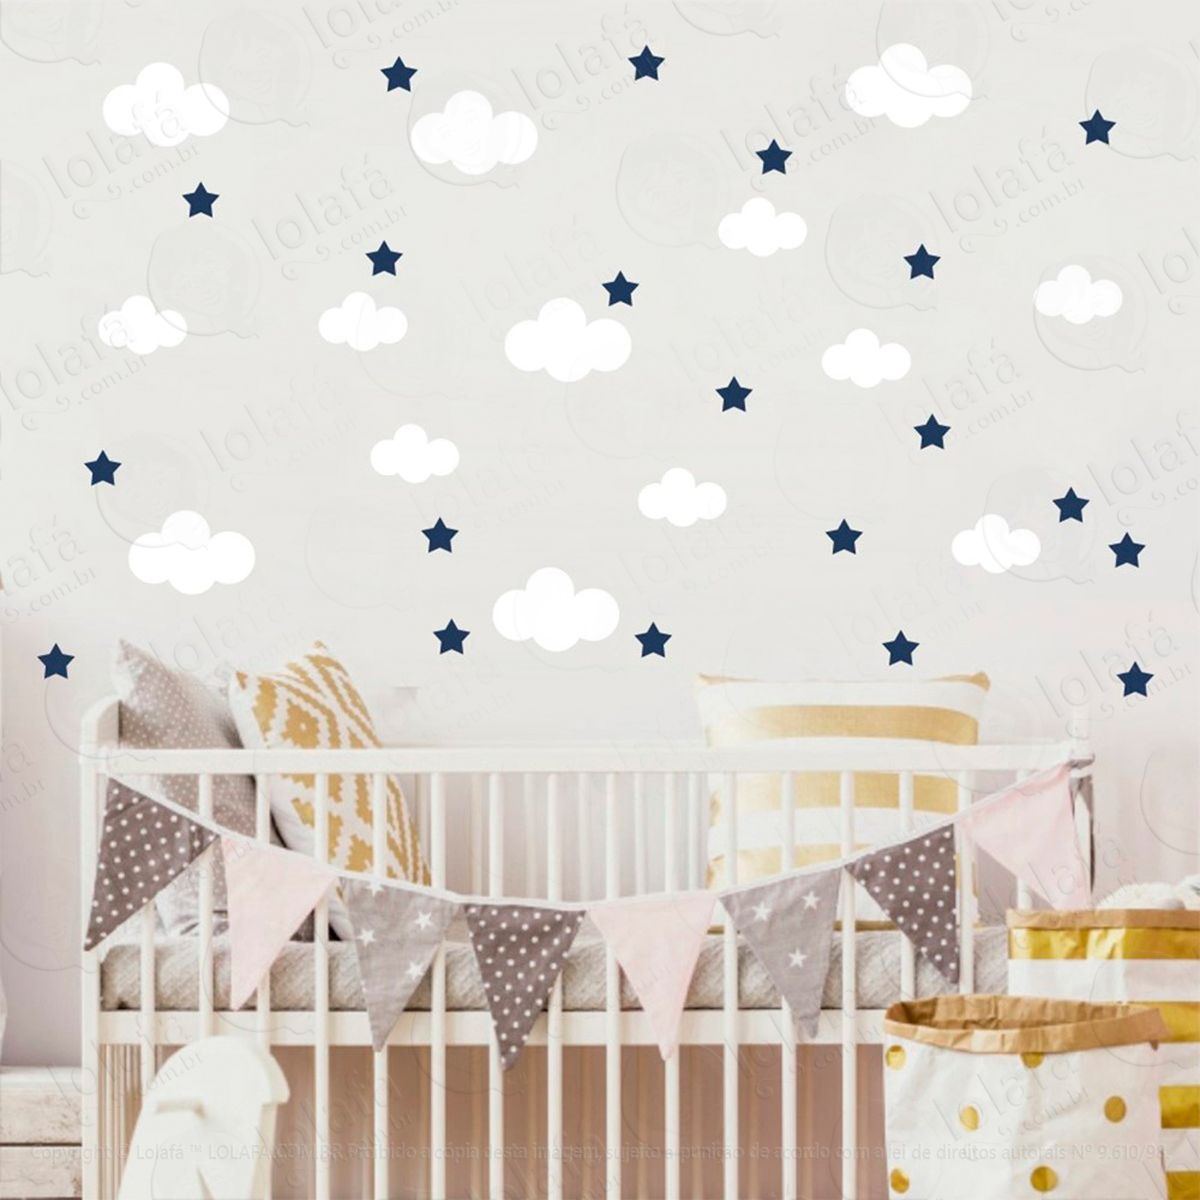 adesivos nuvens e estrelas 104 peças adesivos para quarto de bebê infantil - mod:827